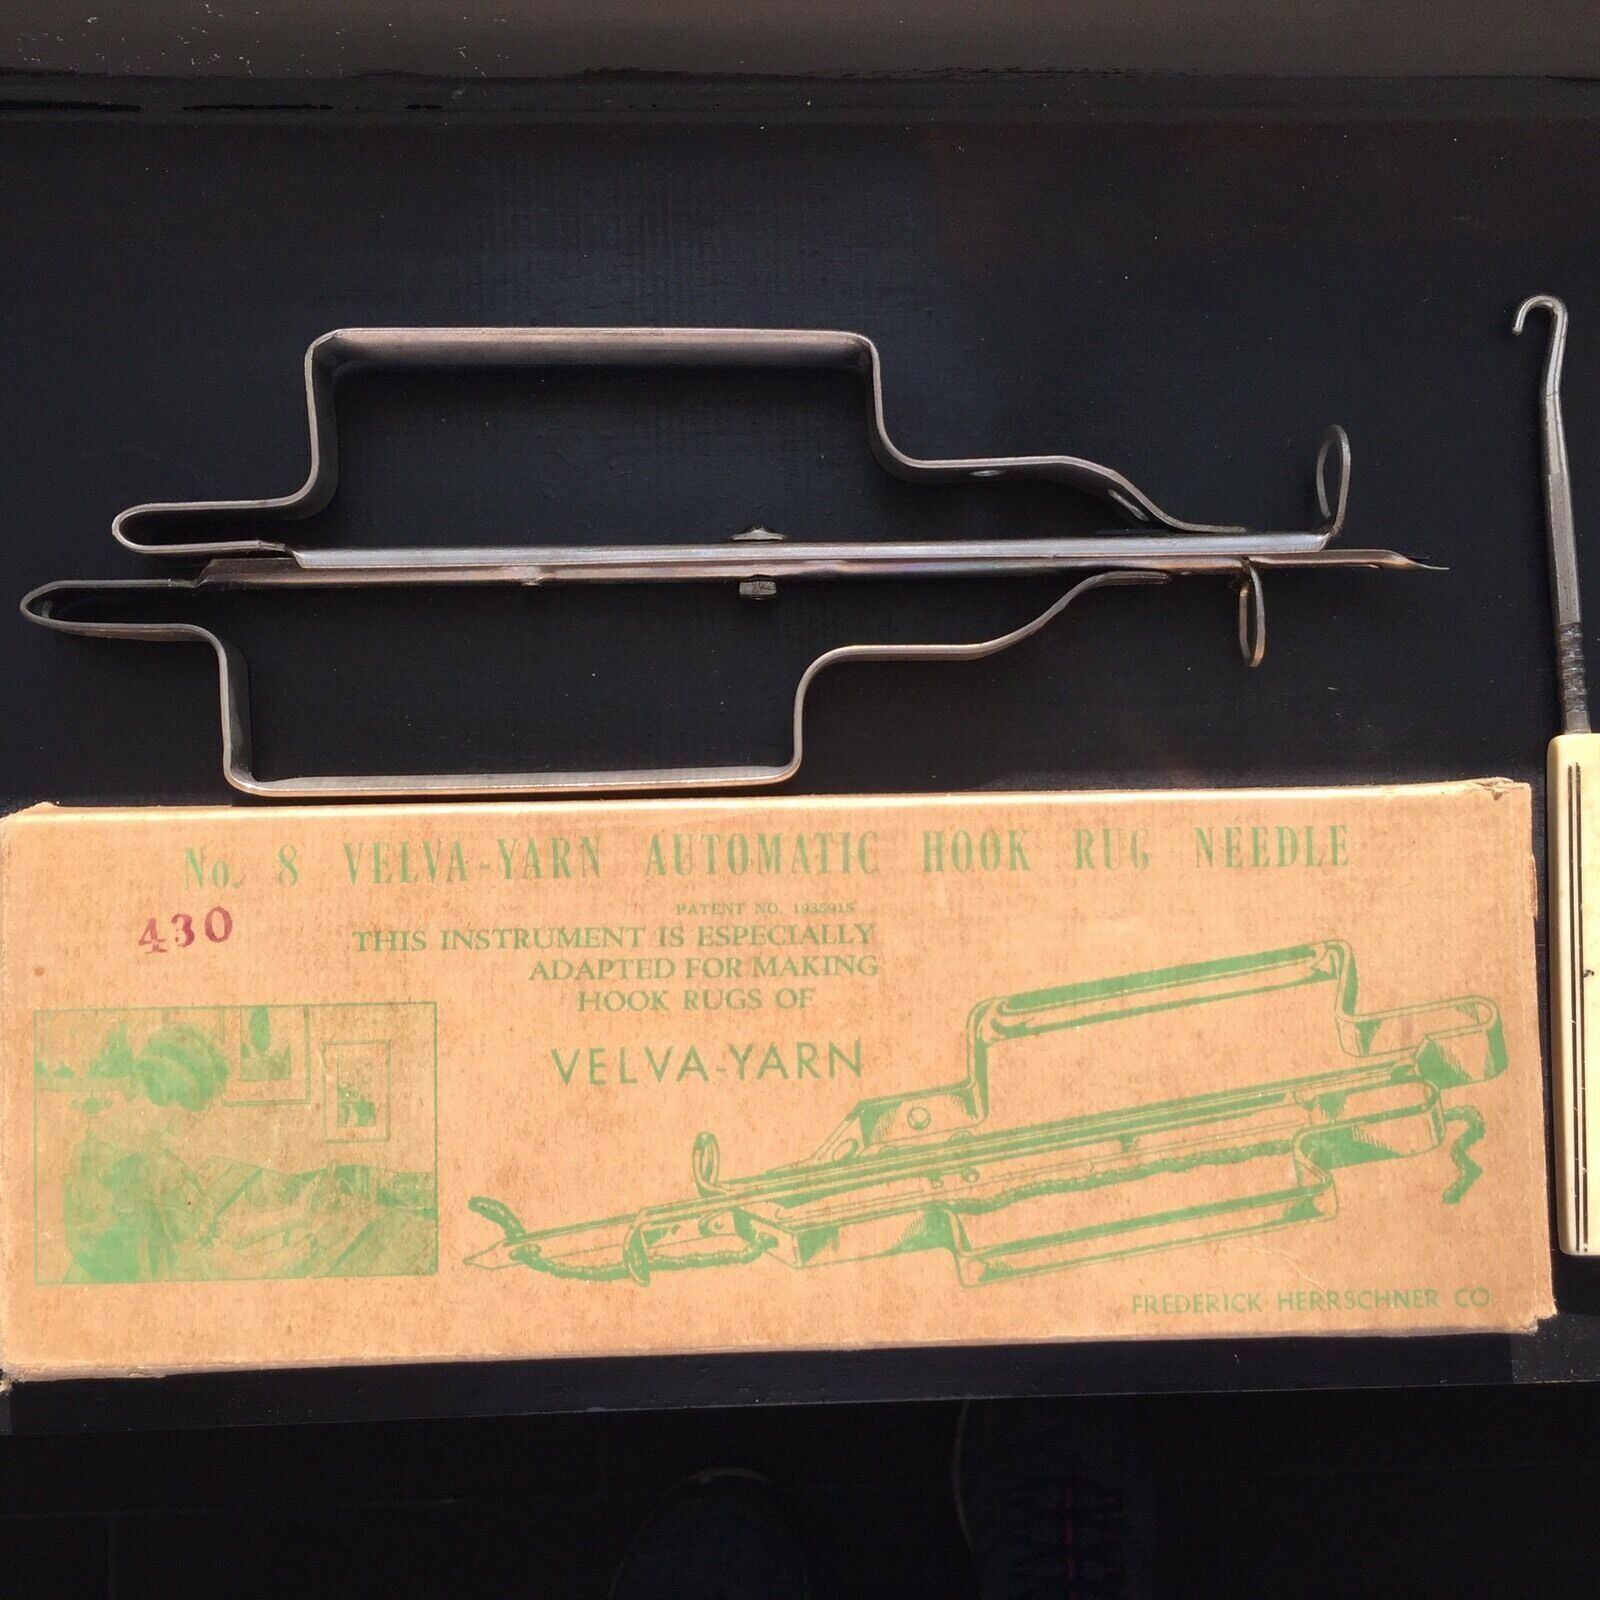 Velva-Yarn Automatic Hook Rug Needle Frederick Herrschner Co Vtg No 8 in Box